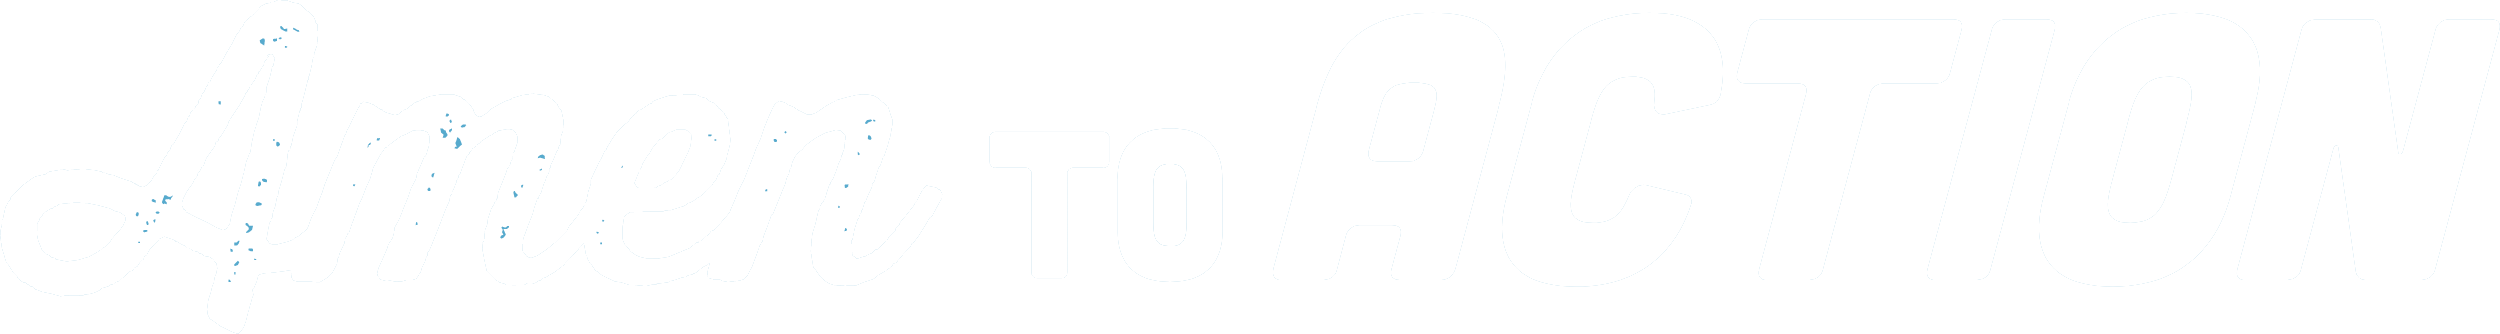 A2A Logo